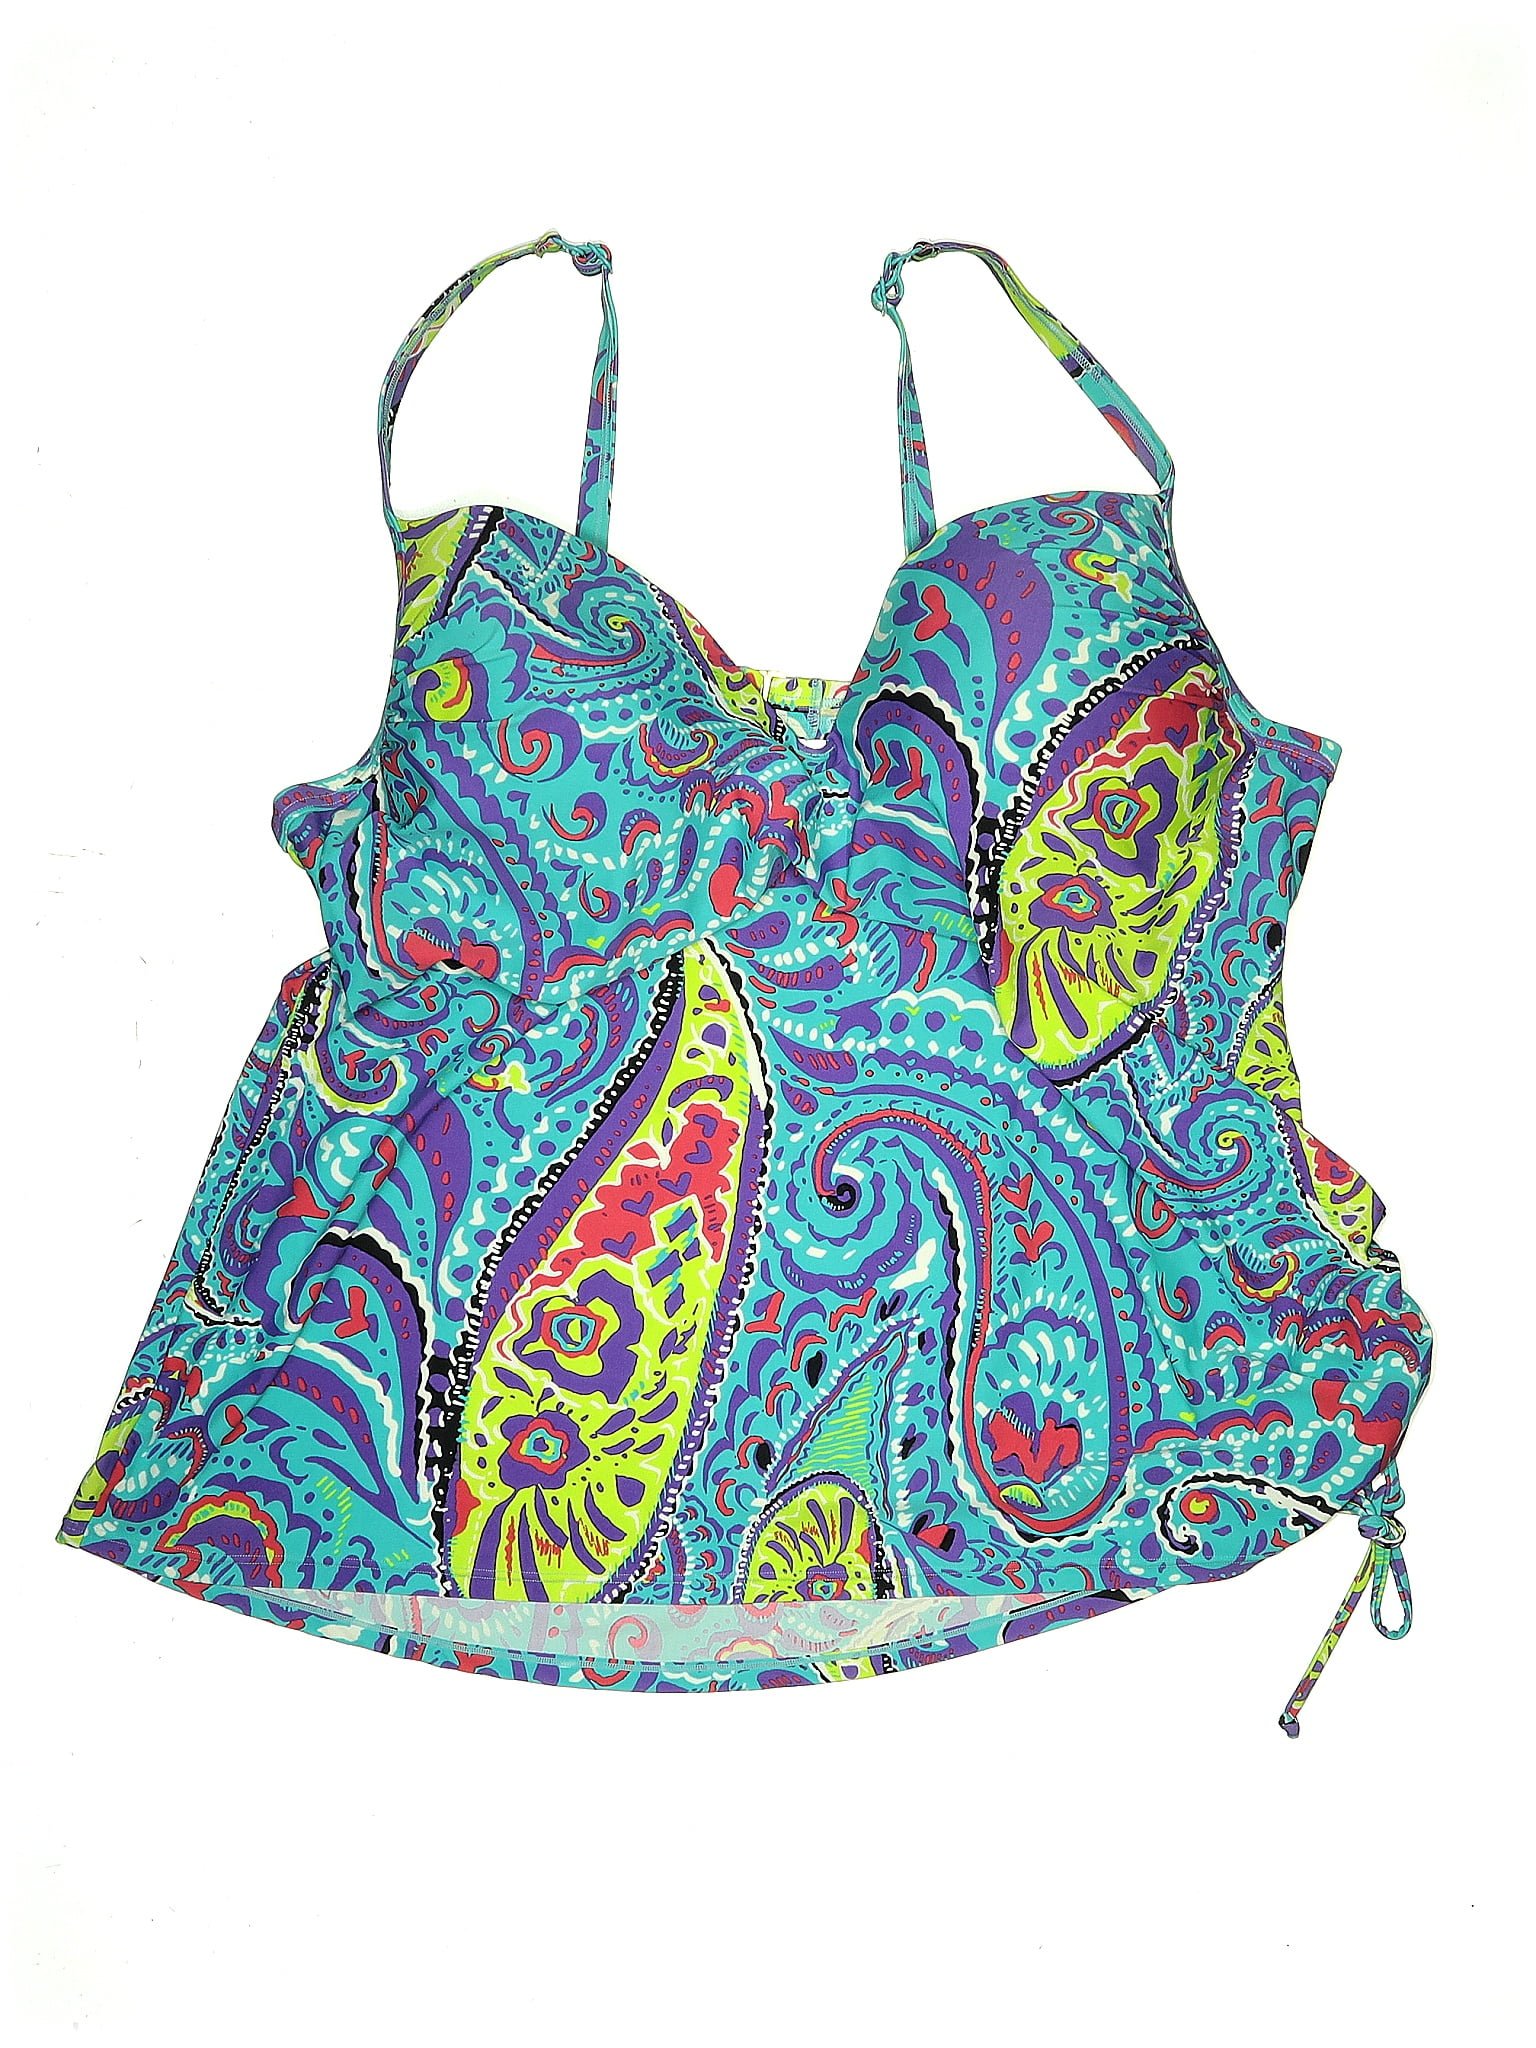 Lane Bryant Paisley Multi Color Blue Swimsuit Top Size 1X Plus (44DD)  (Plus) - 57% off